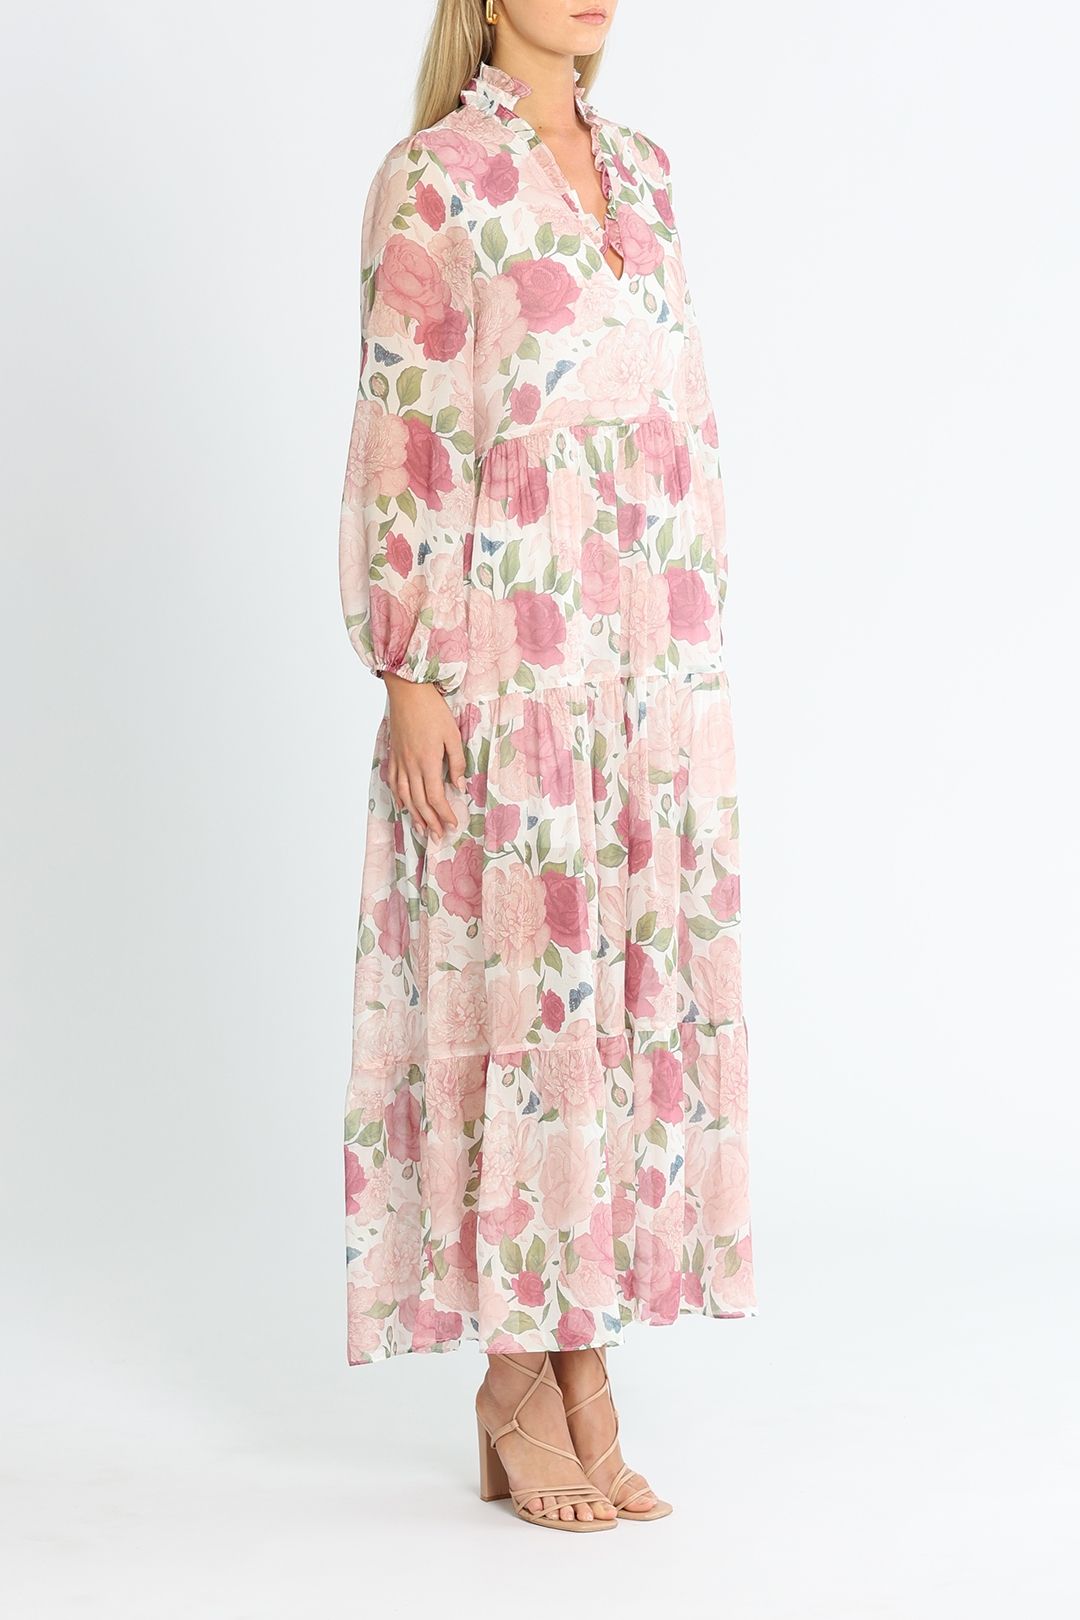 Kimberley Anne Coastlines Rose Bloom Maxi Dress Sheer